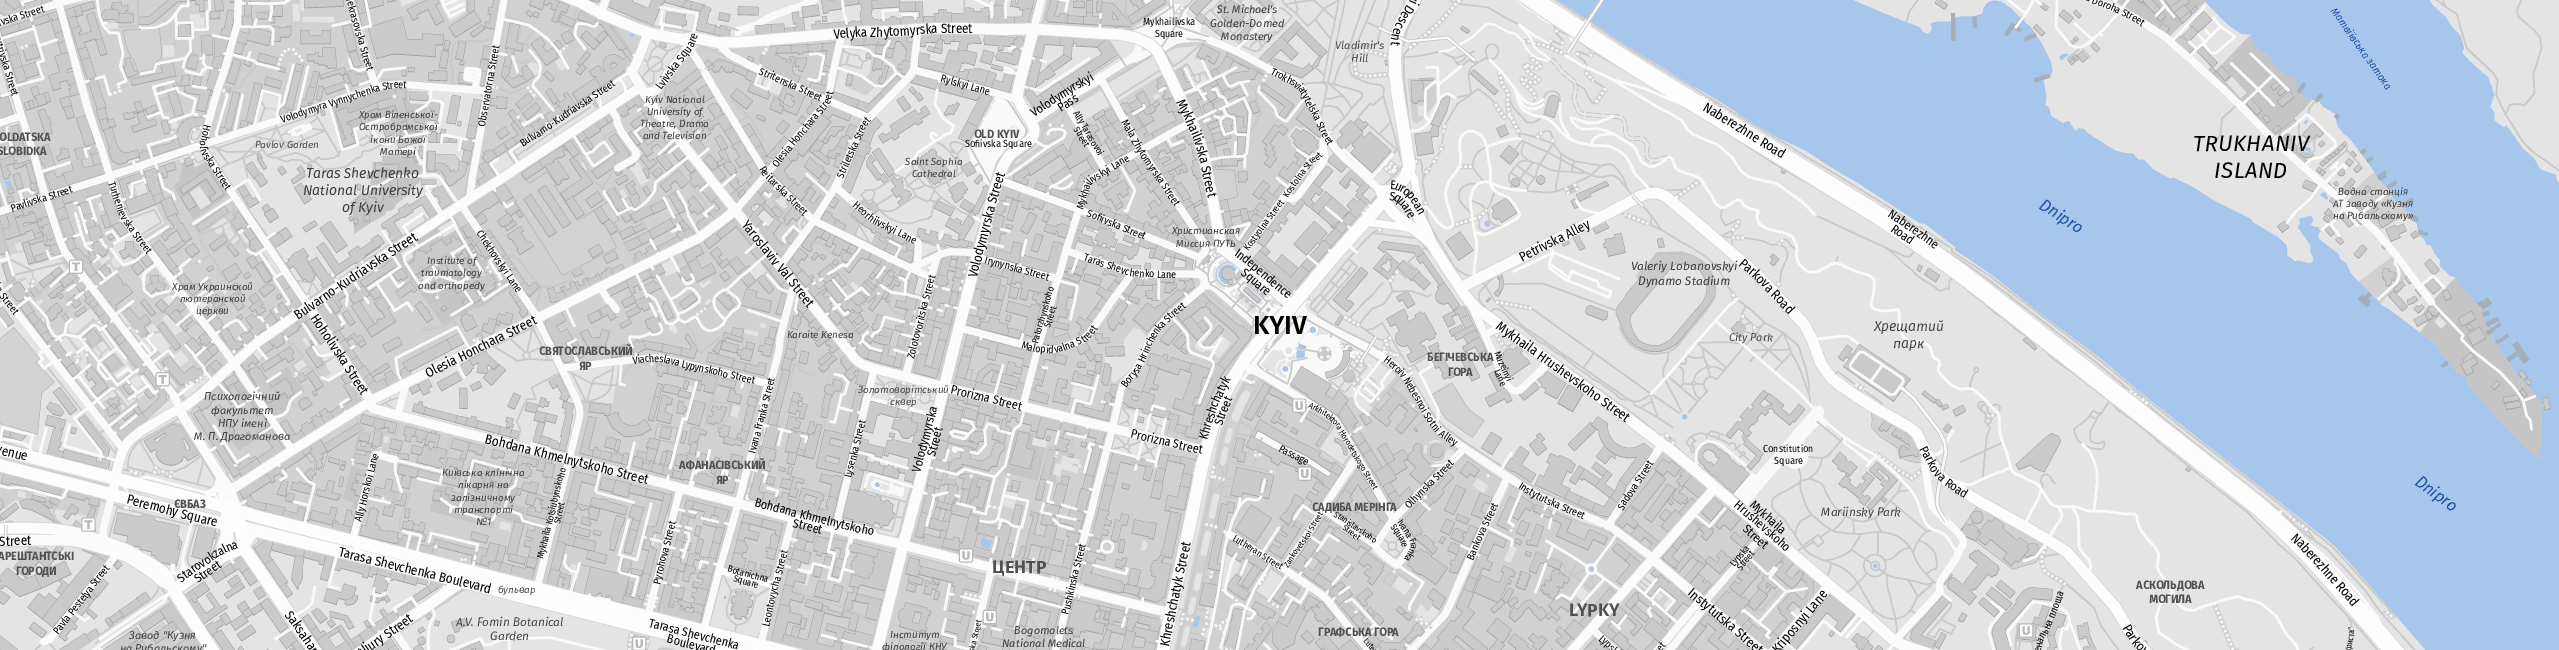 Stadtplan Kiew zum Downloaden.